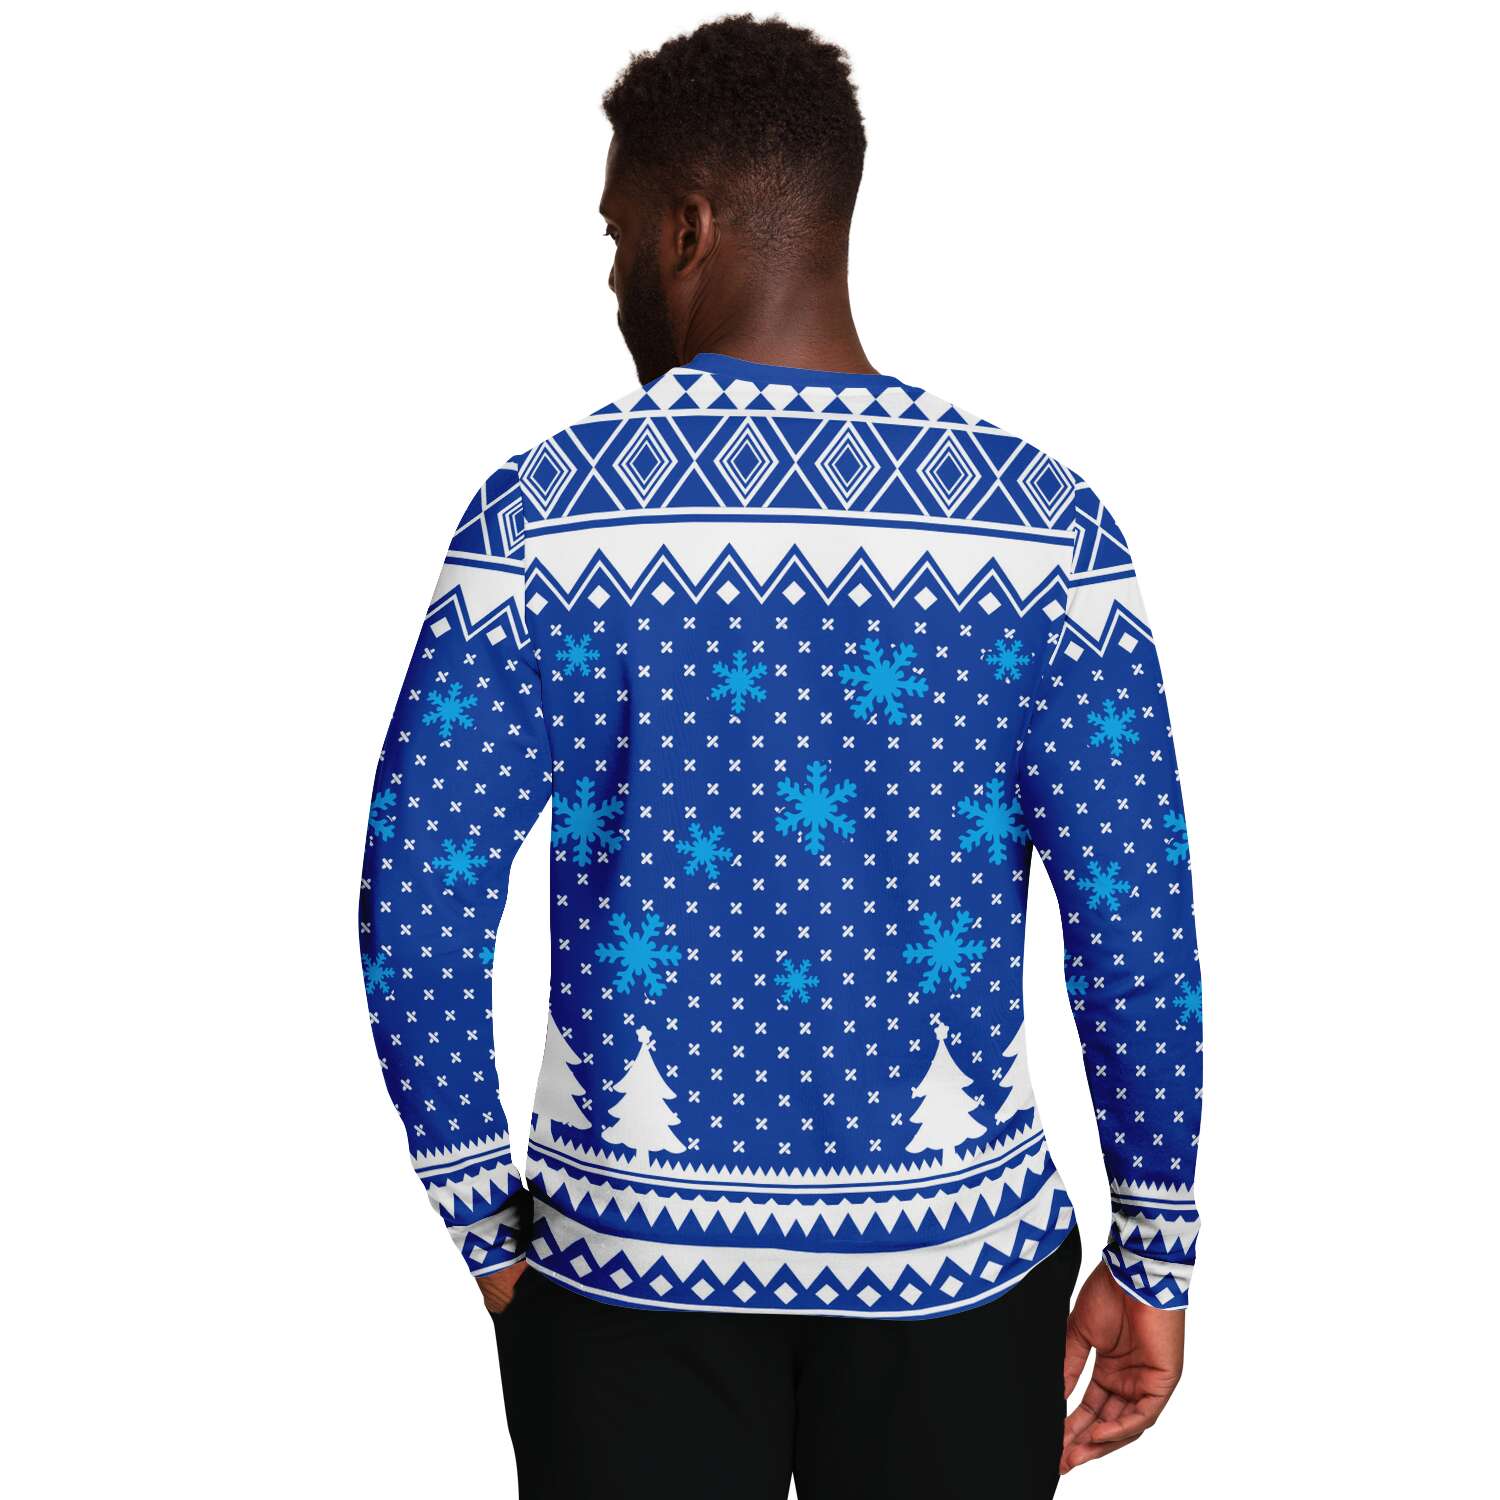 Prickly & Lit Sweatshirt | Unisex Ugly Christmas Sweater, Xmas Sweater, Holiday Sweater, Festive Sweater, Funny Sweater, Funny Party Shirt